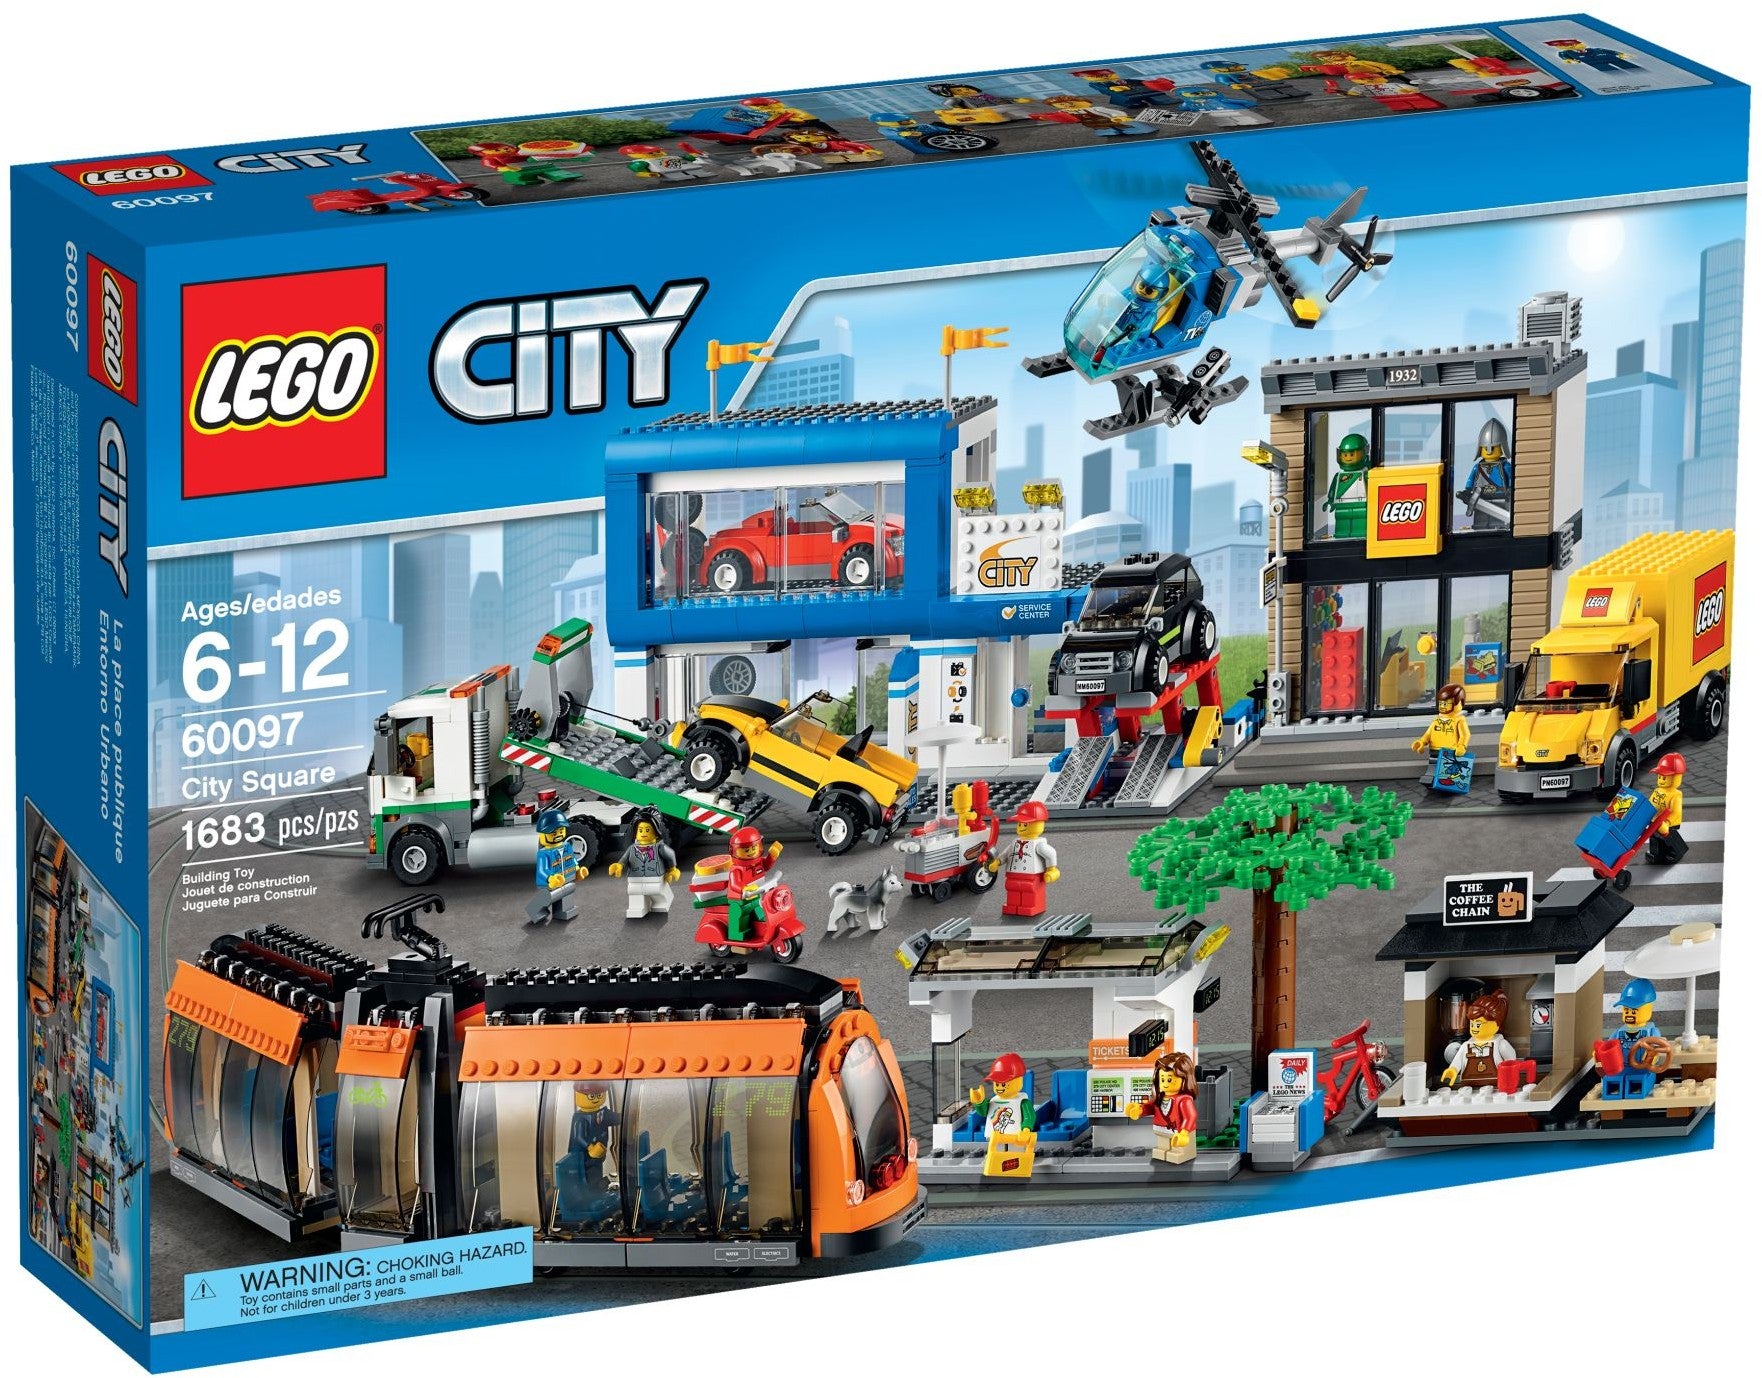 Lego City 60097 - City Square